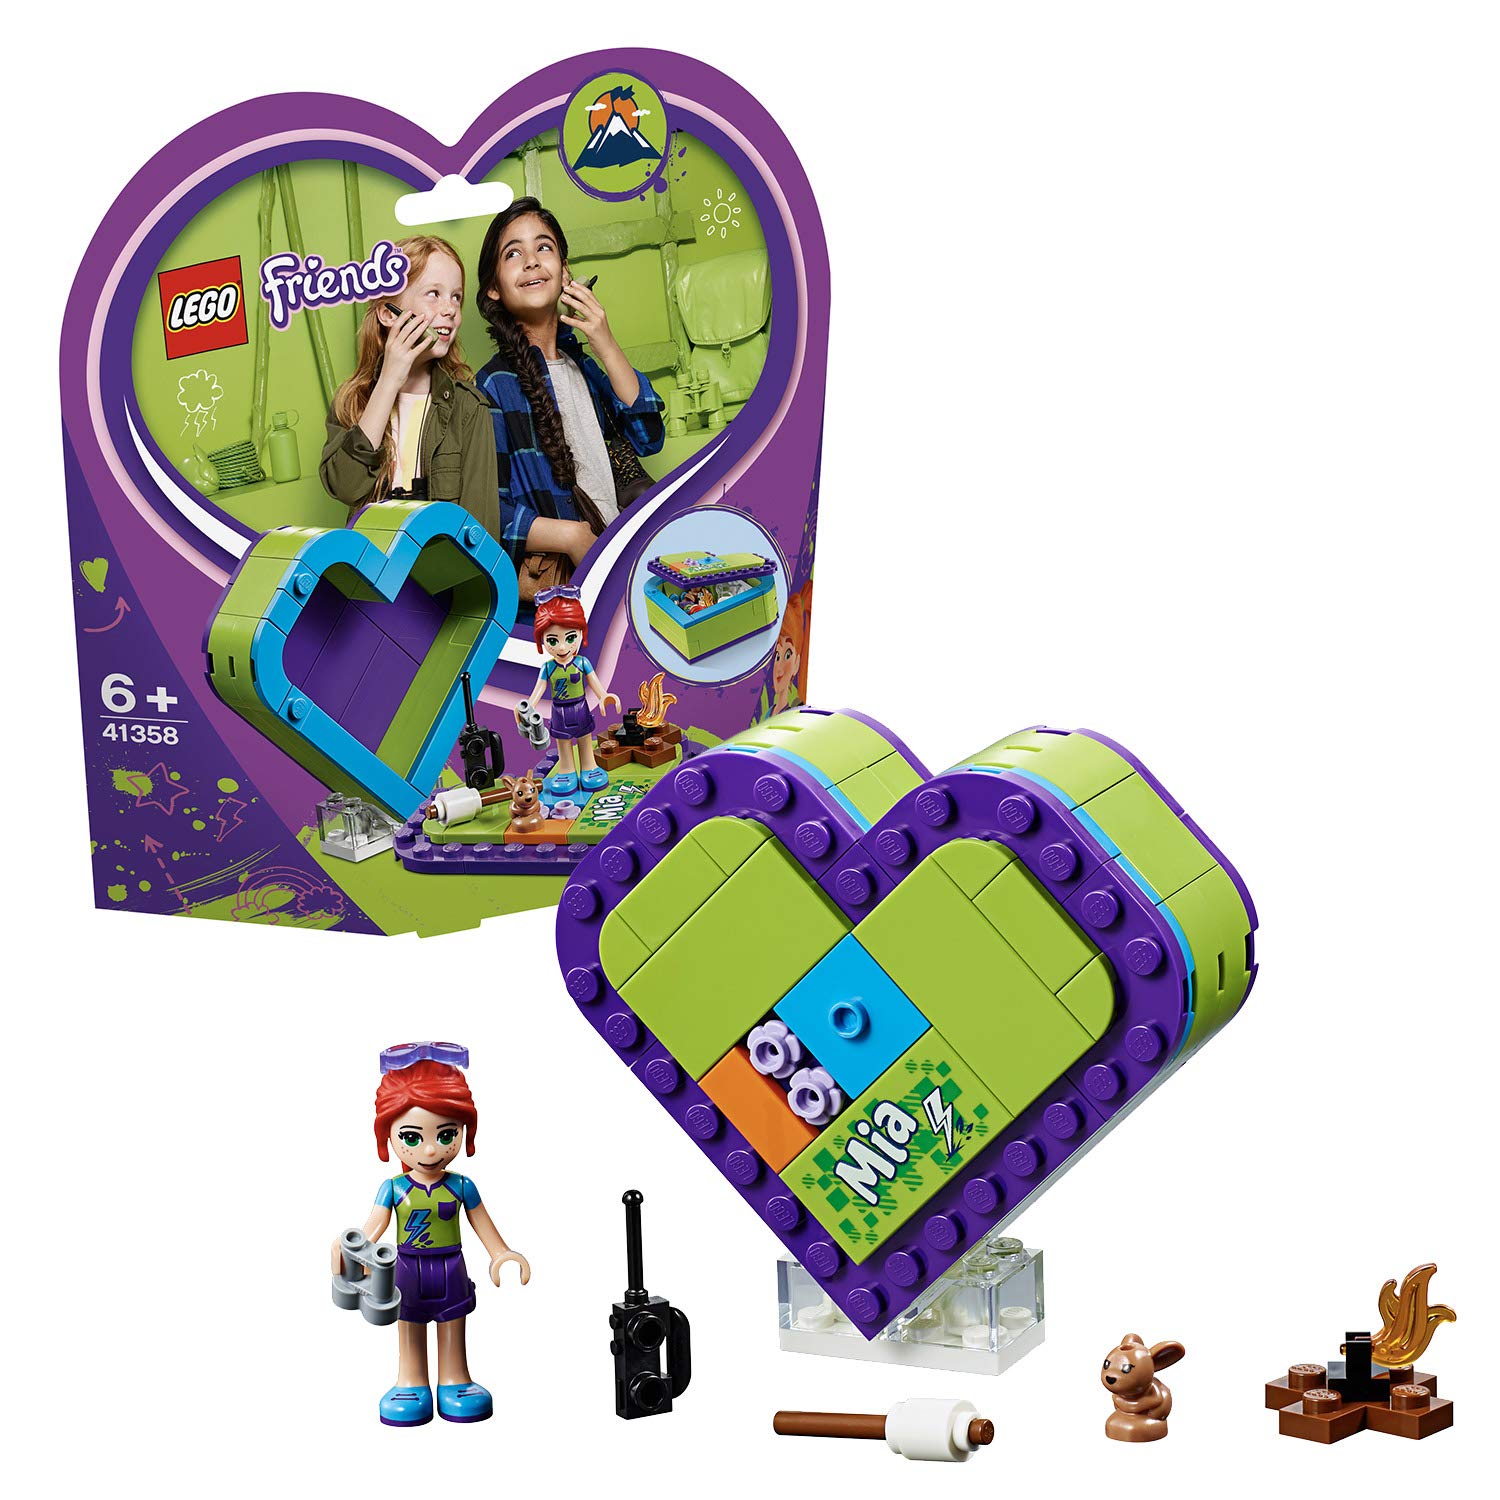 Lego 41358 Friends Mias Heart Box, Multicoloured